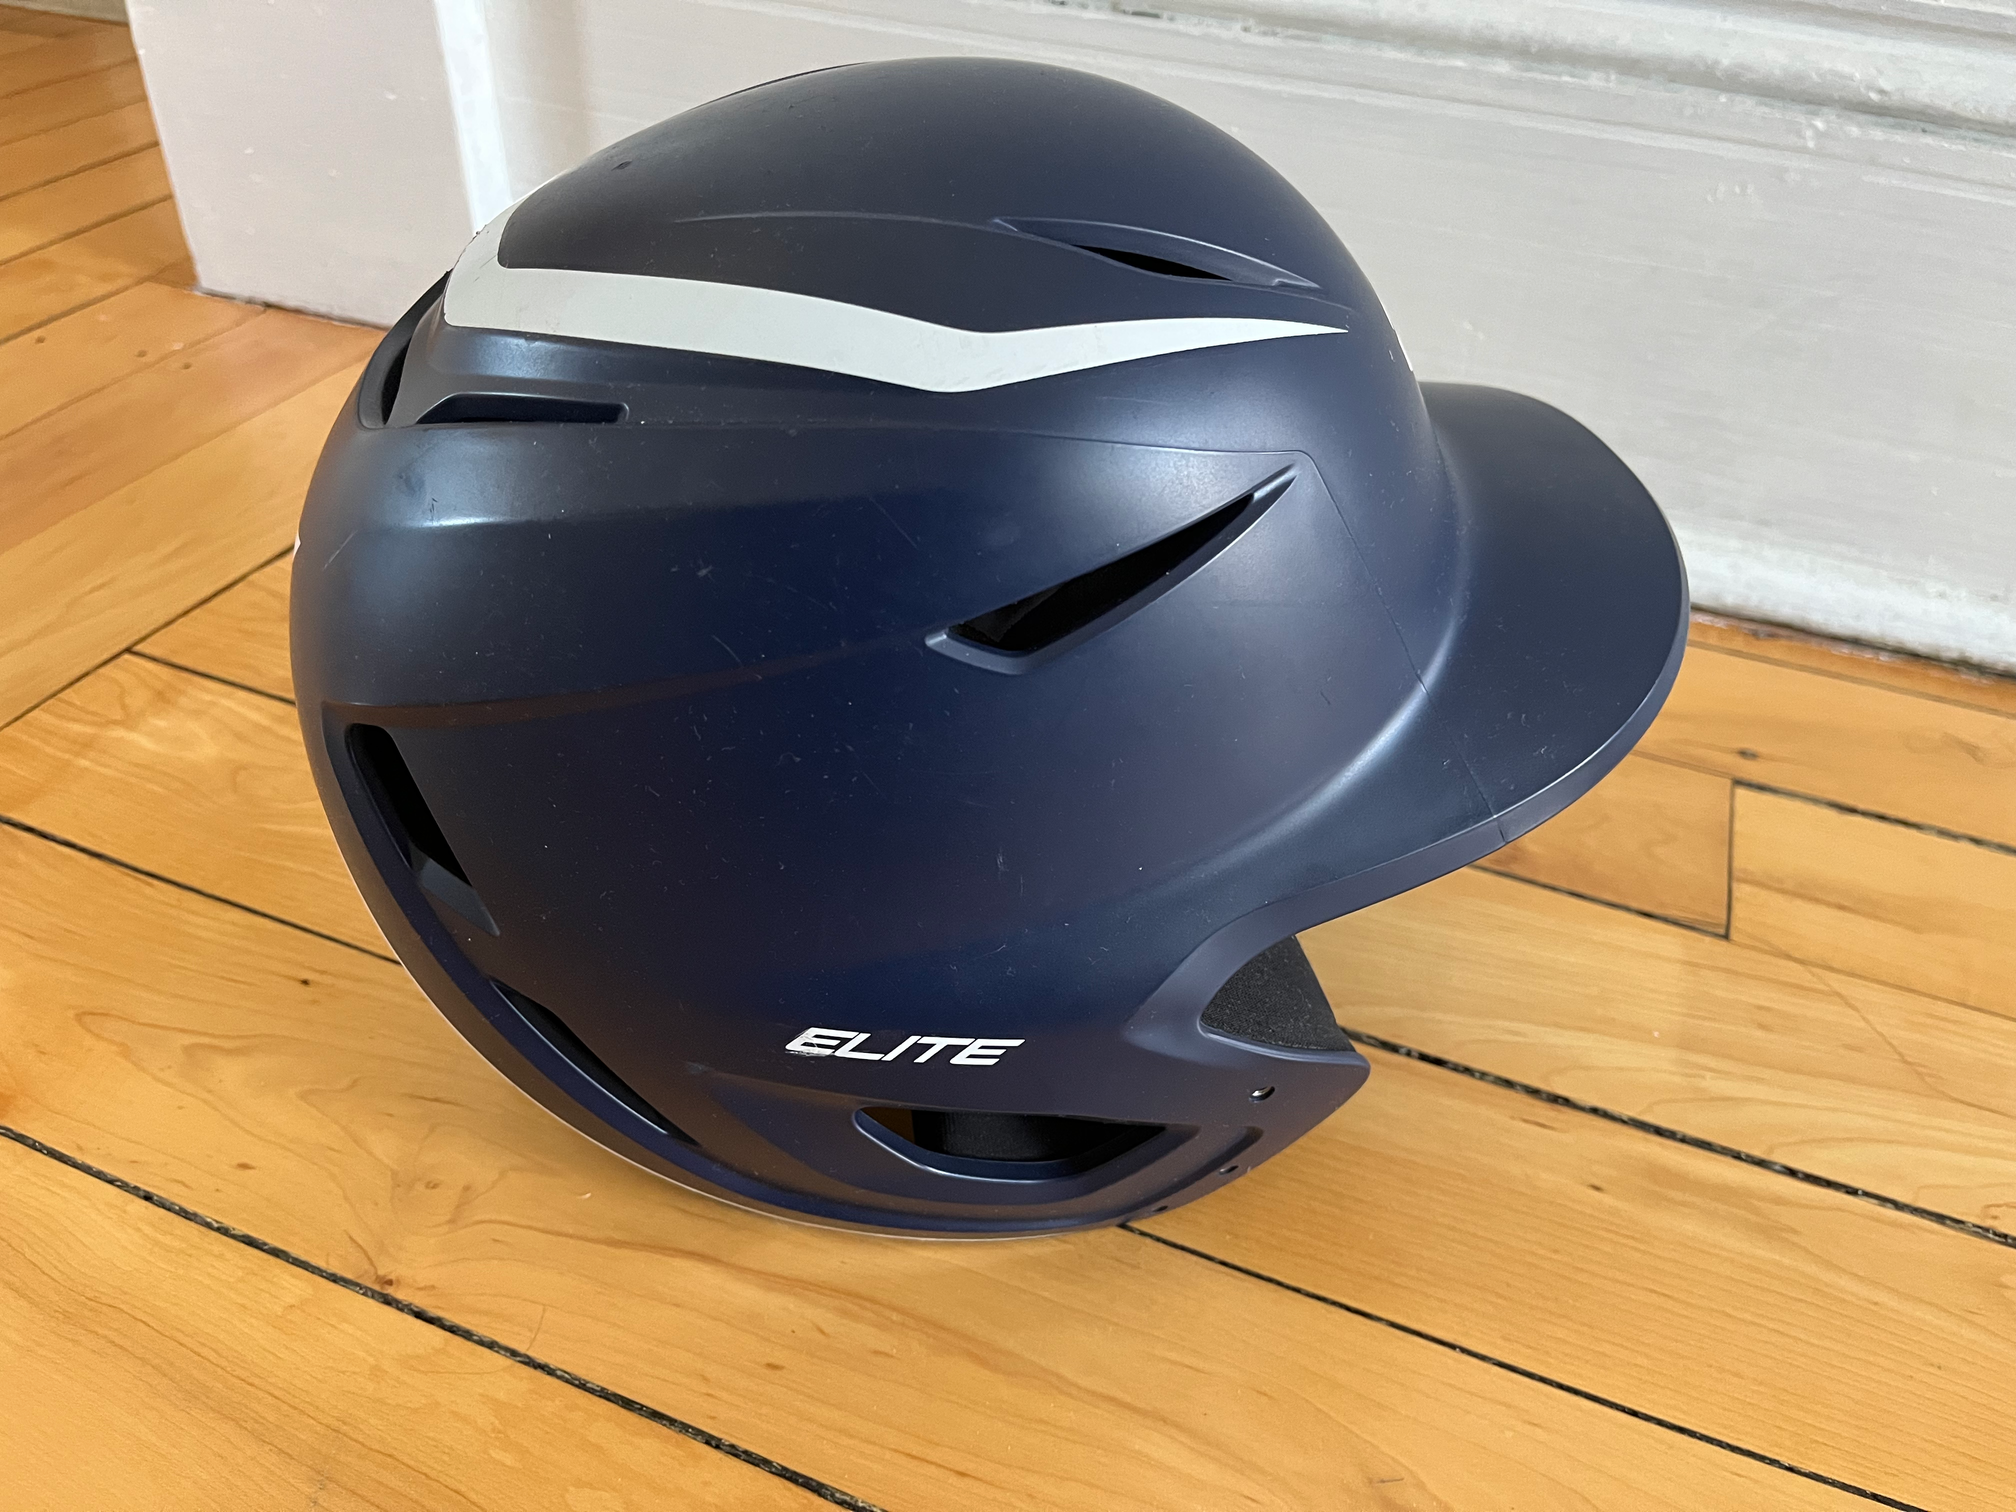 Used 7 1/8 - 7 3/4 Easton Elite X Batting Helmet